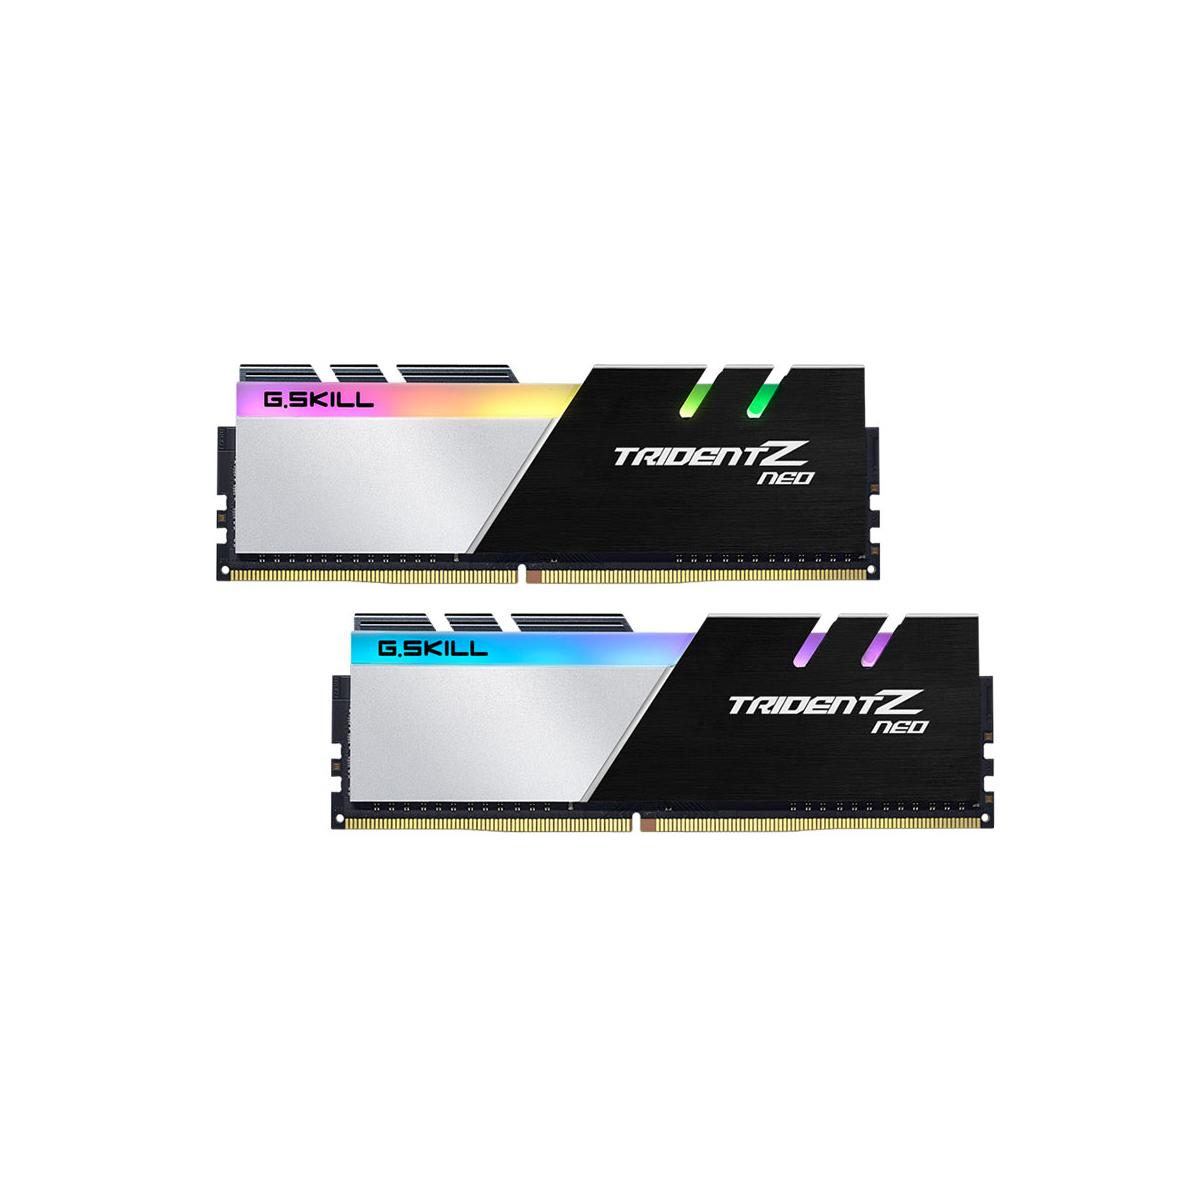 MEMORIA DIMM DDR4 G.SKILL (F4-3200C16D-16GTZN) 16GB (2X8GB) 3200MHZ, TRIDENT Z NEO - GSKILL